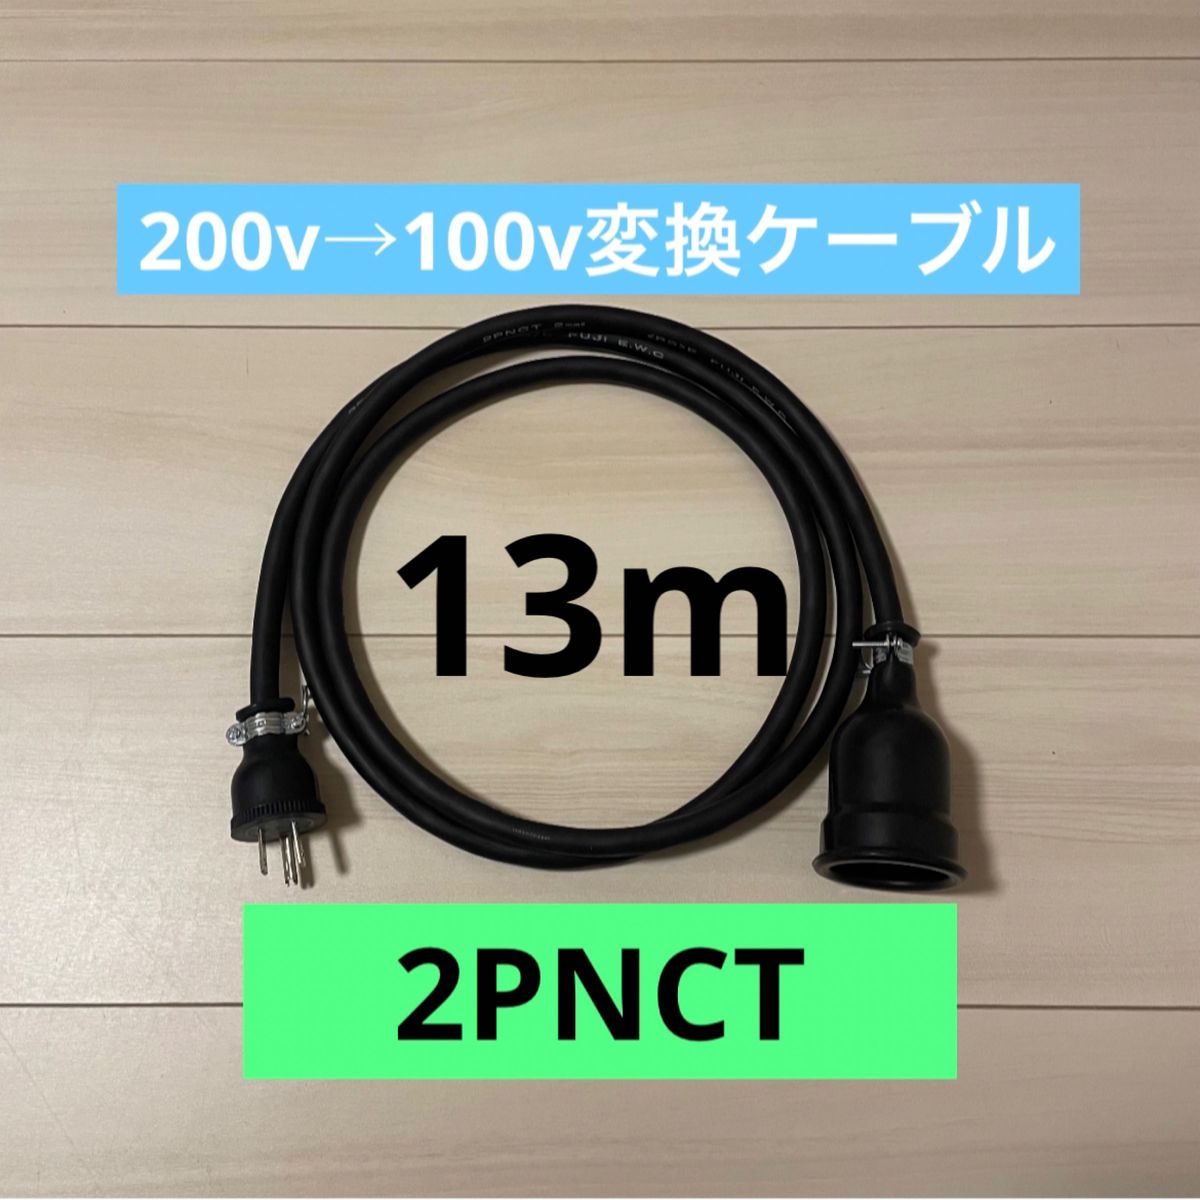 電気自動車コンセント★200V→100V変換充電器延長ケーブル13m 2PNCT